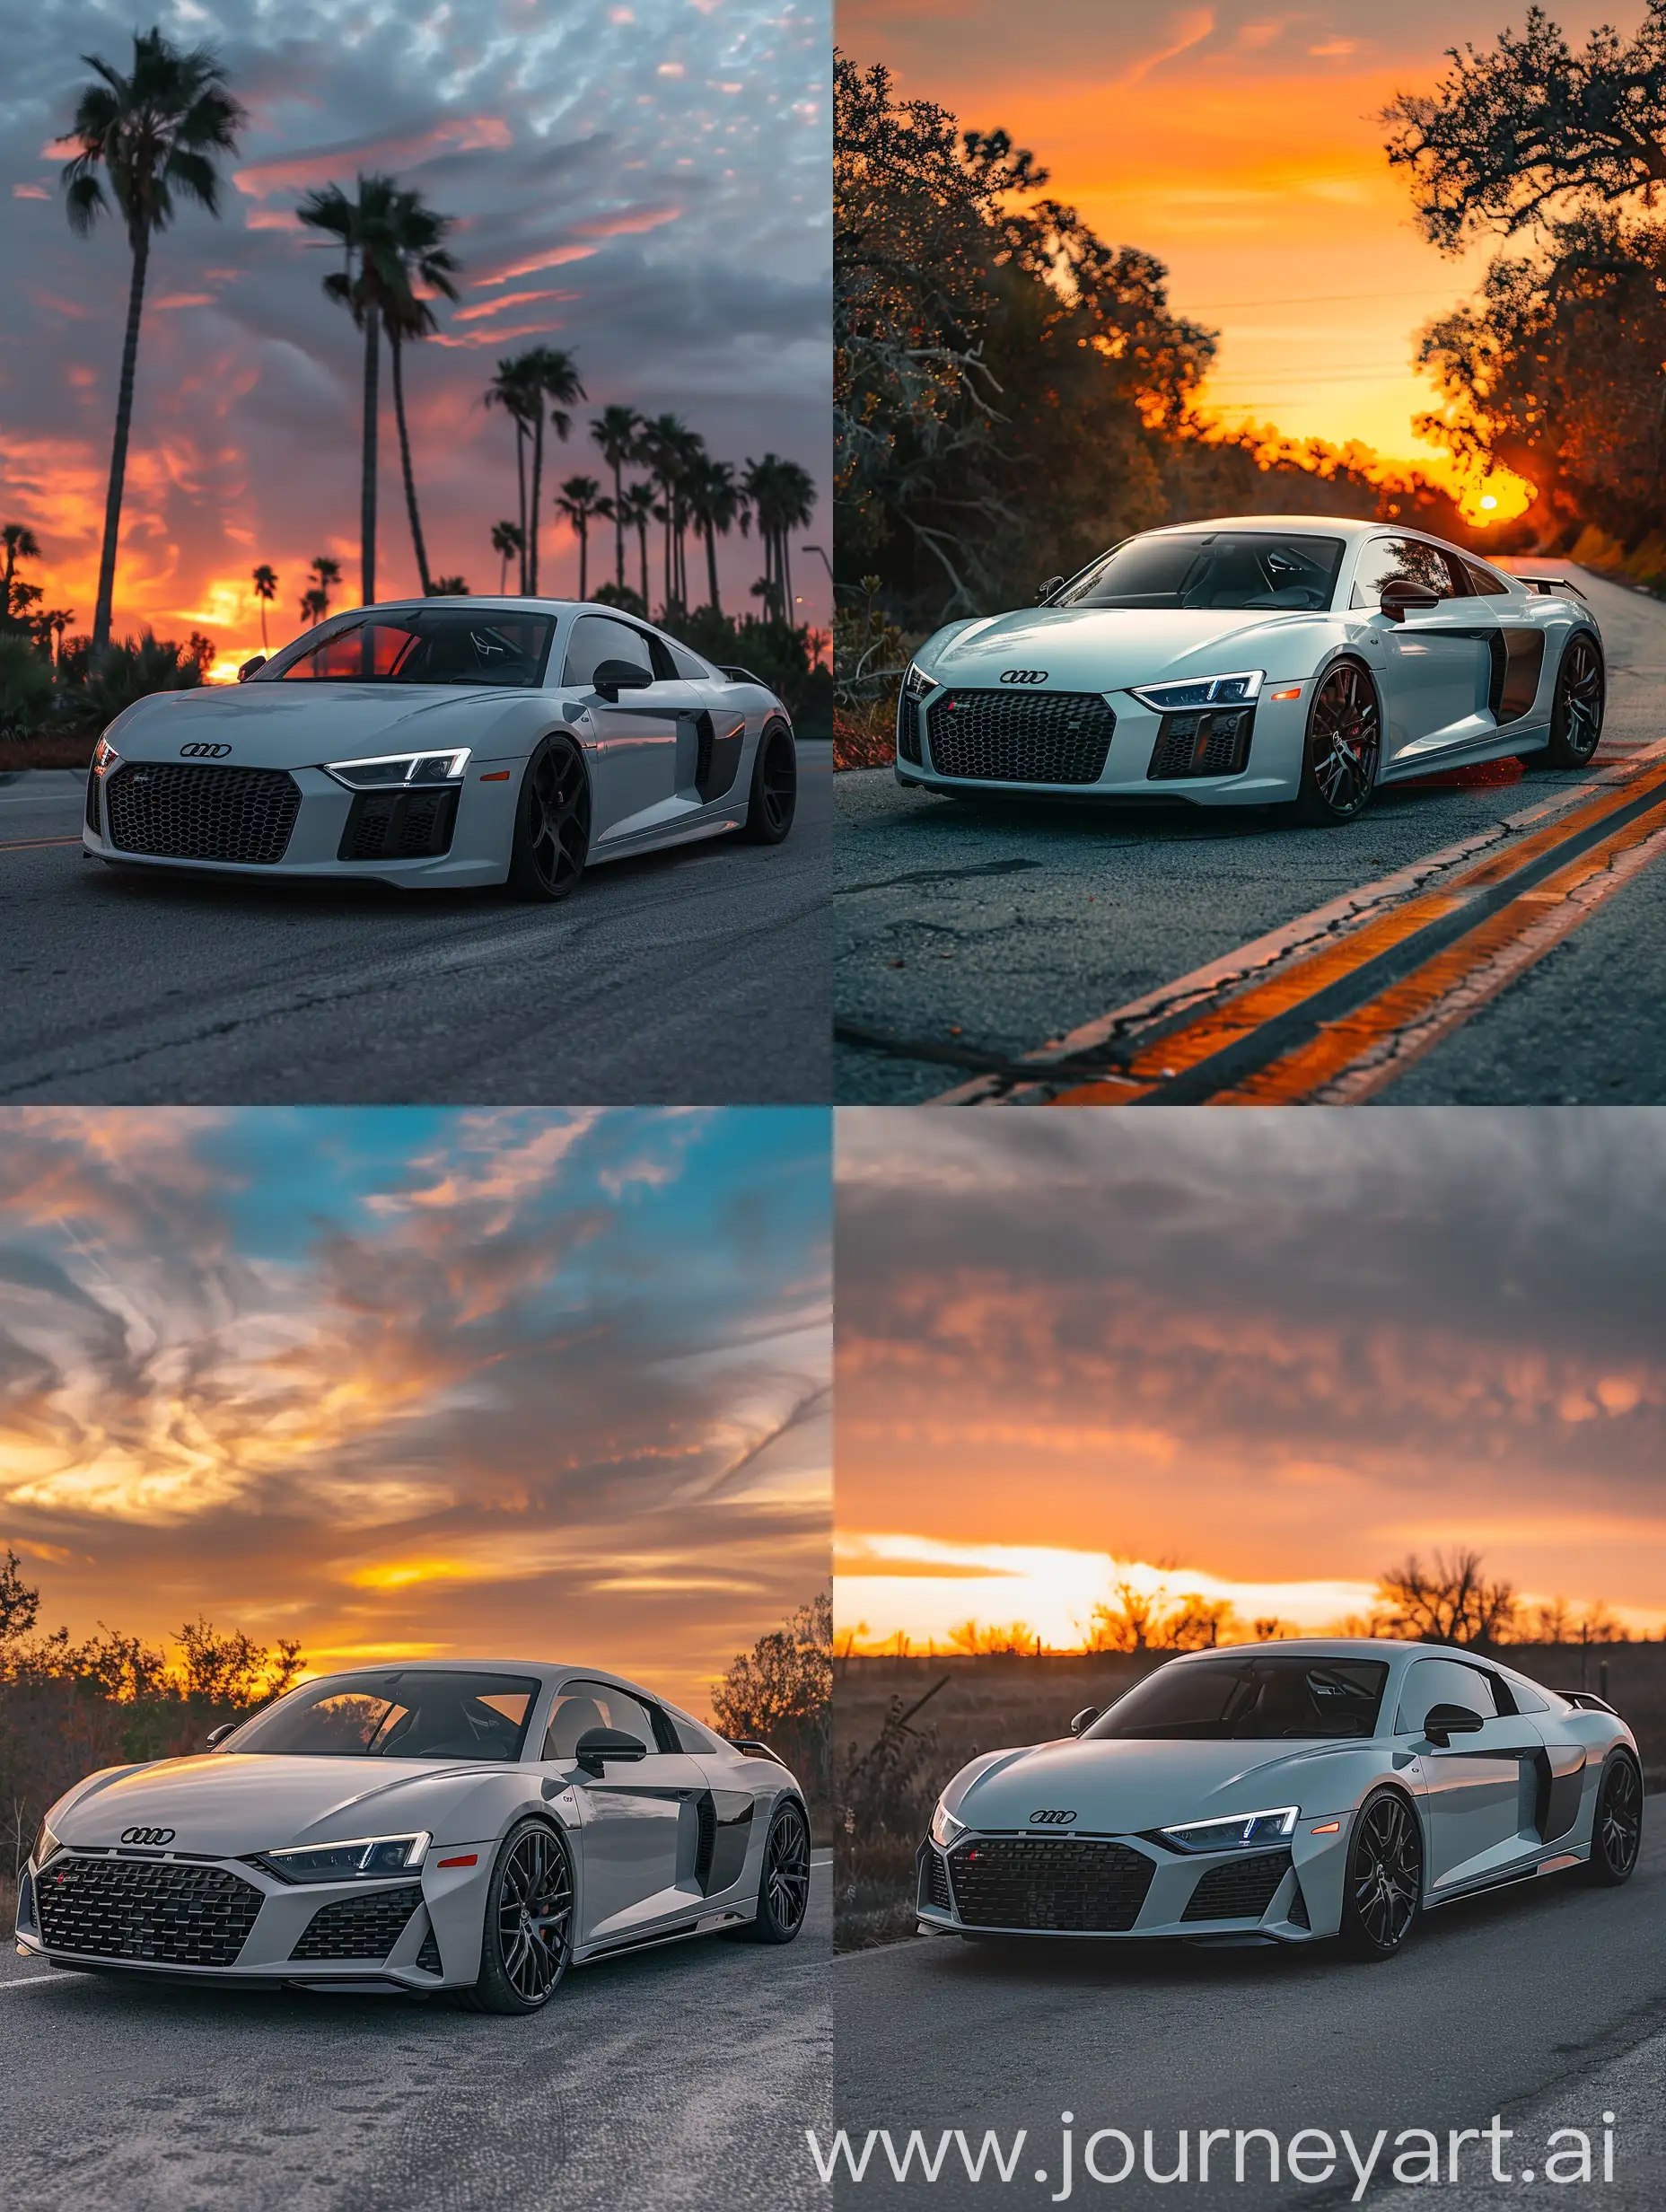 Audi r8 in mat wit nardo grijs kleurtjes gemixt wallpaper Instagram style foto 8k van Sunset op privacy wegen foto hdr detailed